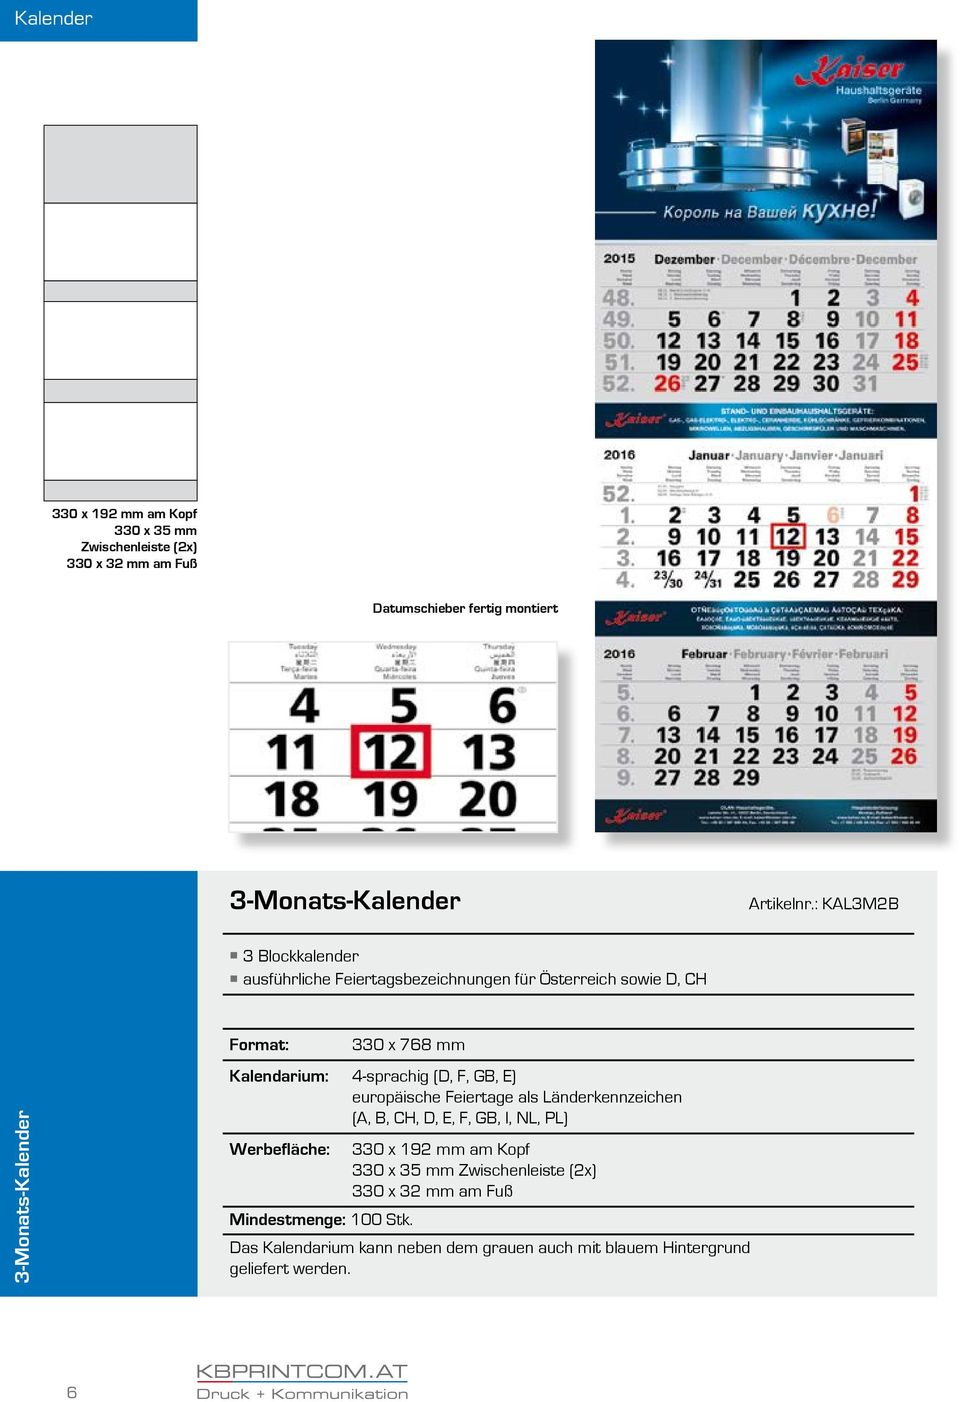 : KAL3M2B 3 Blockkalender ausführliche Feiertagsbezeichnungen für Österreich sowie D, CH 3-Monats-Kalender 330 x 768 mm Kalendarium: